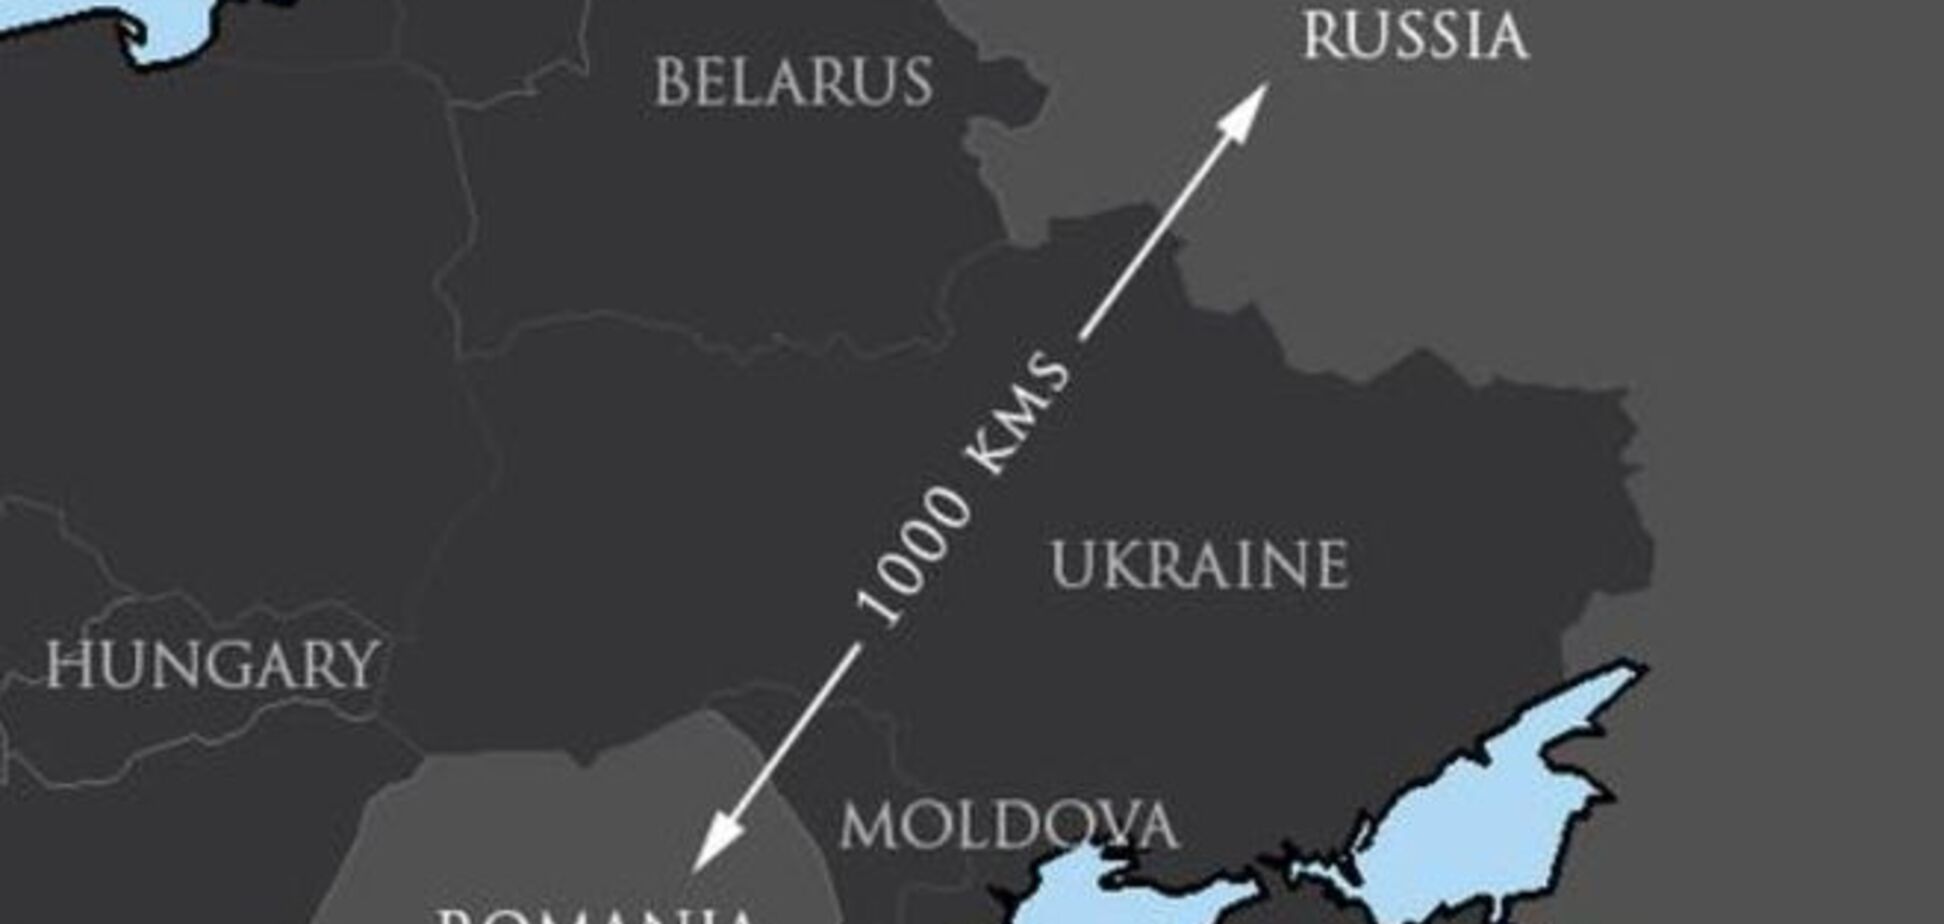 'Карту купи, лапоть!': в НАТО высмеяли российских дипломатов за границу РФ в Румынии